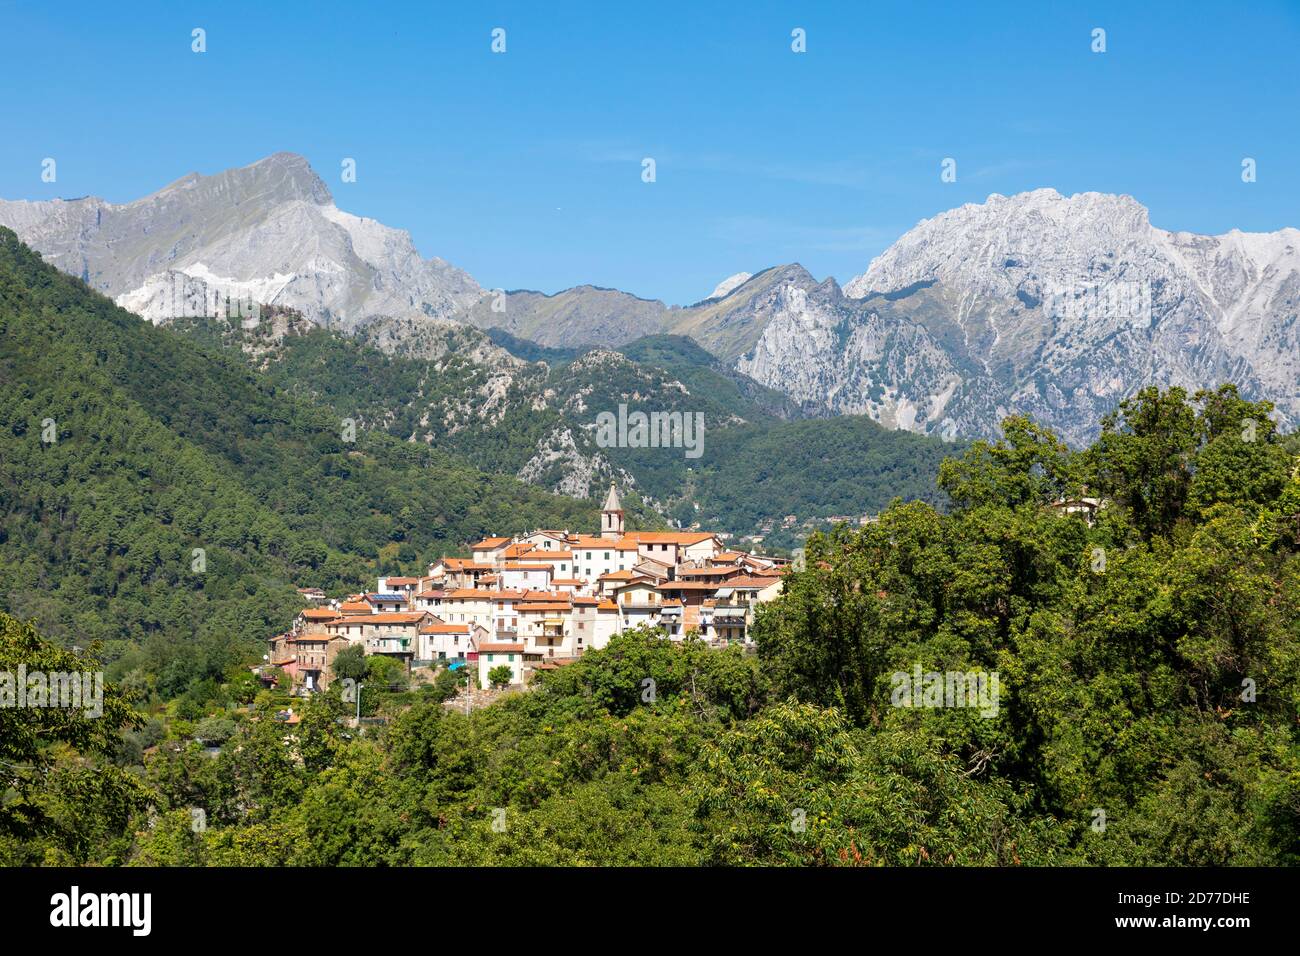 Le village de Pariana dans les Alpes Apuanes, Italie Banque D'Images